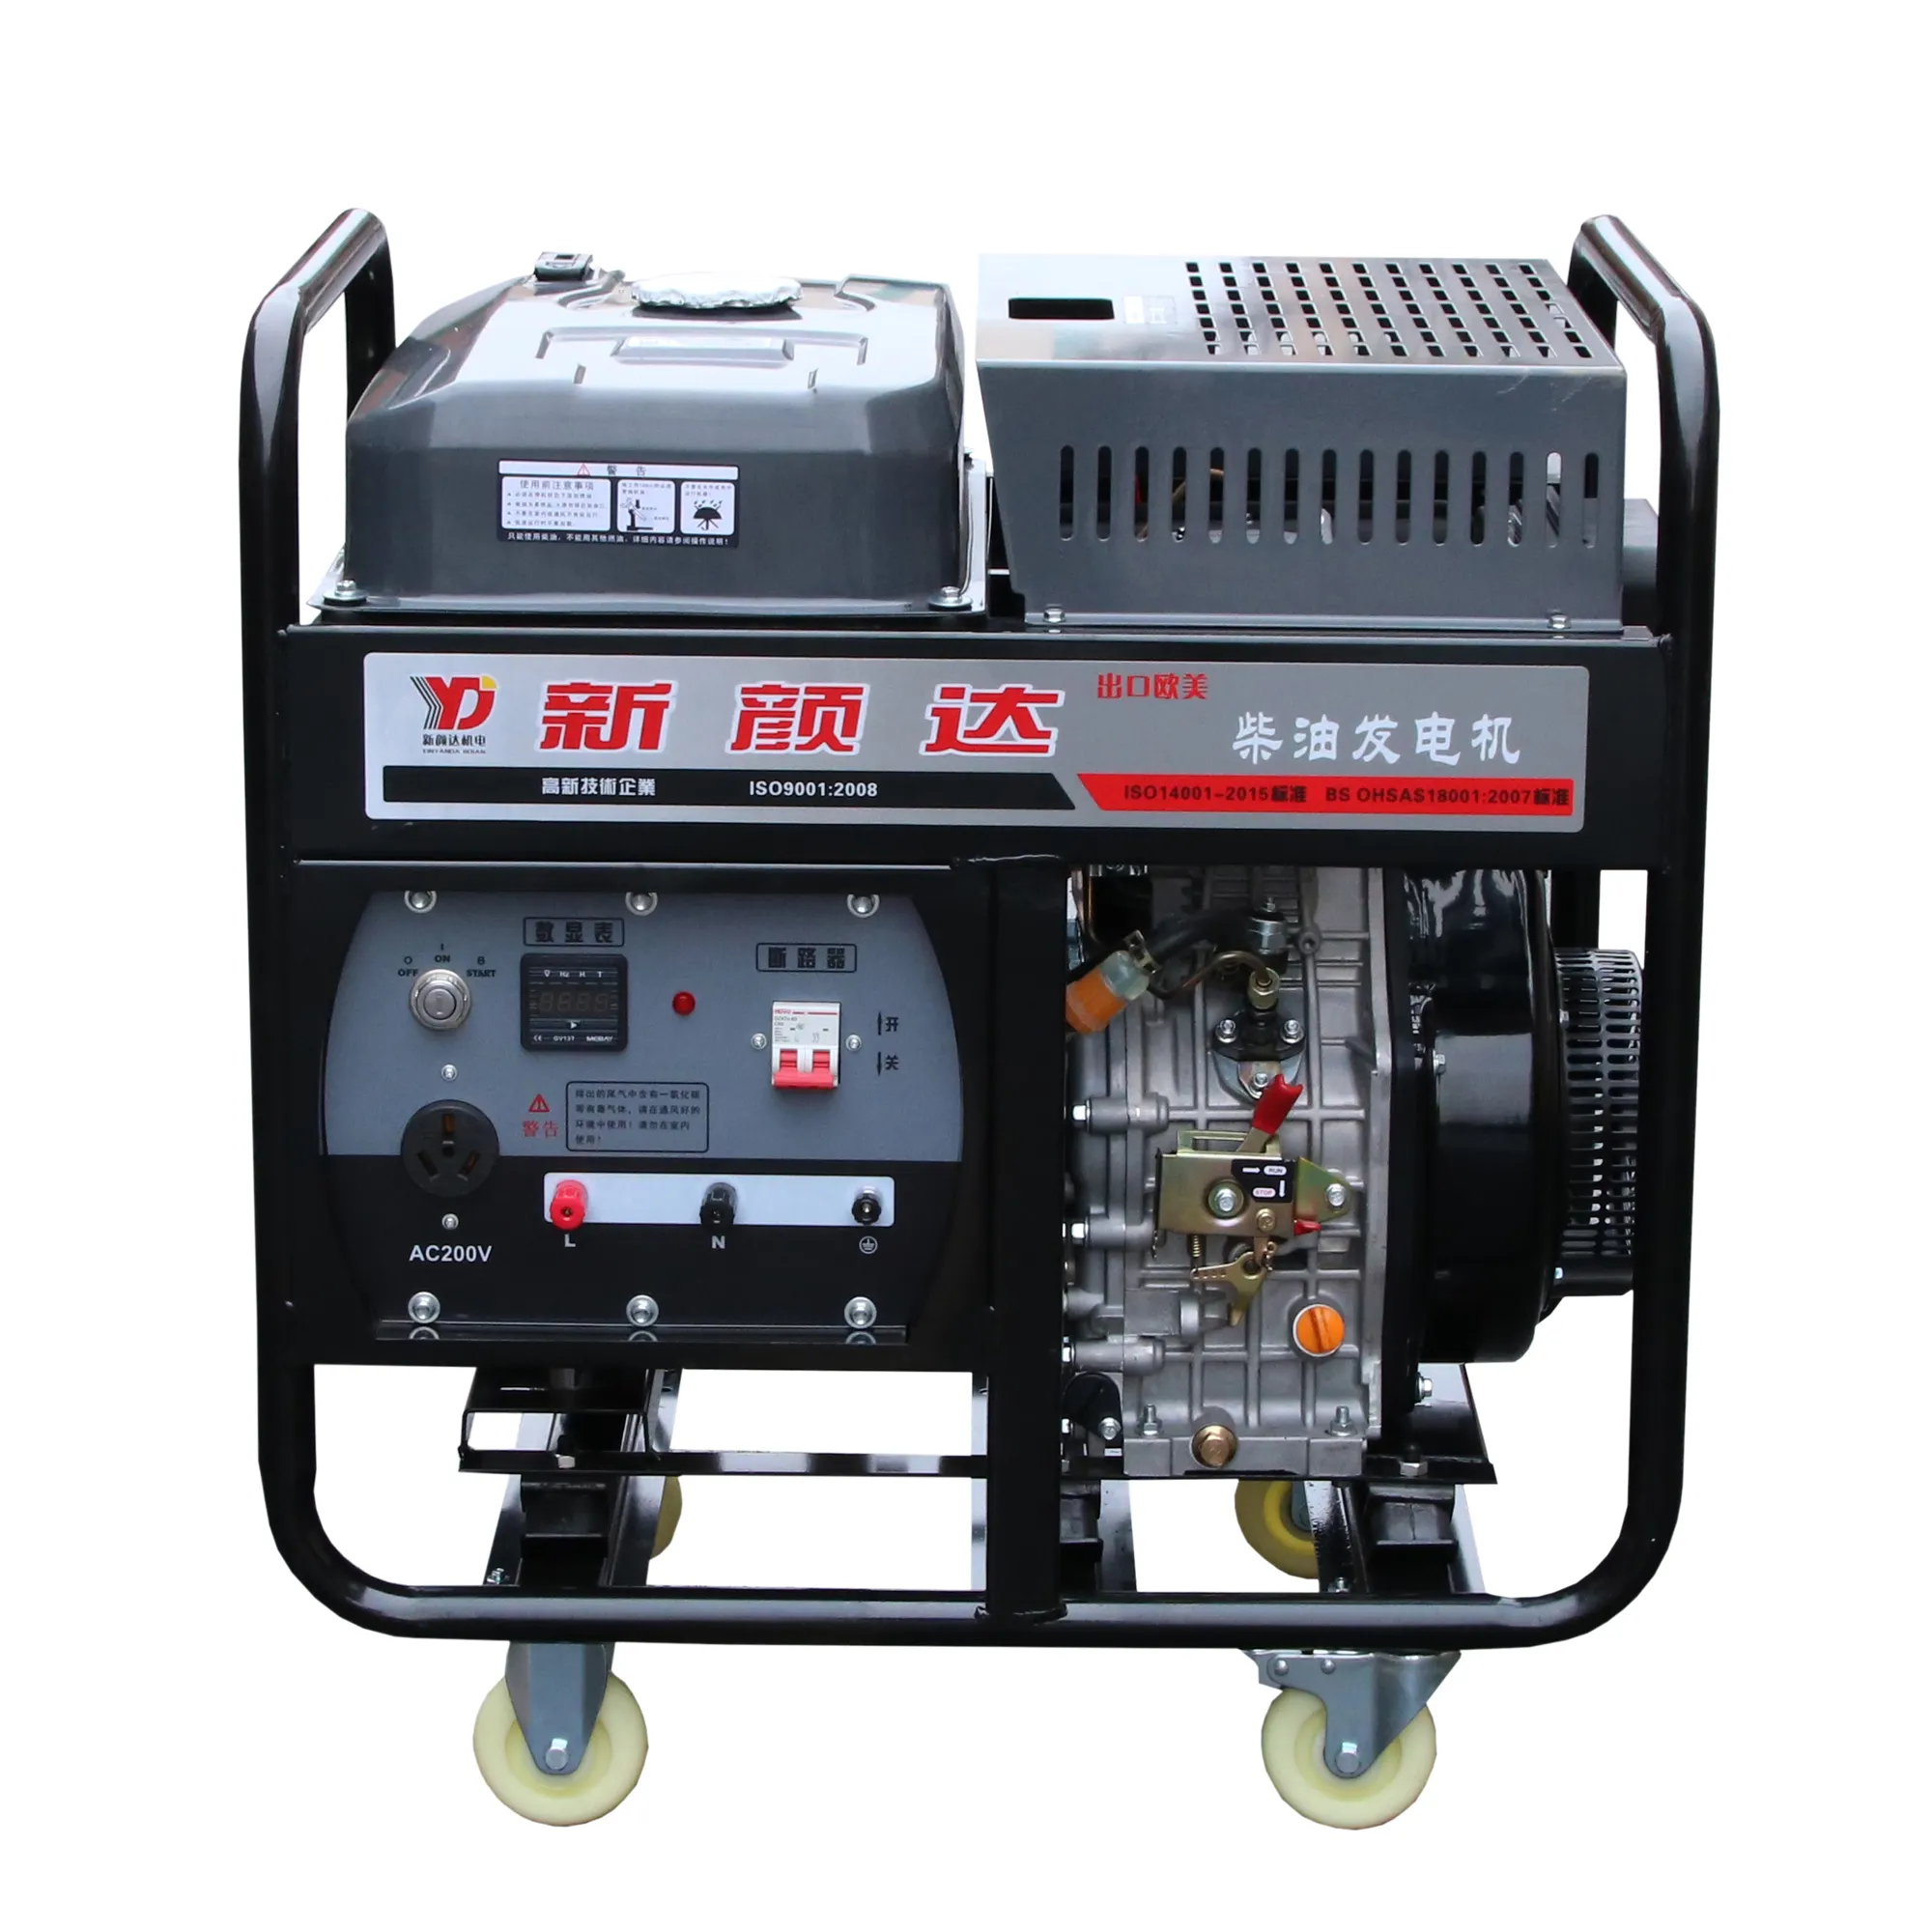 Generator Diesel 110V 220V AC, Set Fase Tunggal 6kW untuk Rumah Tangga